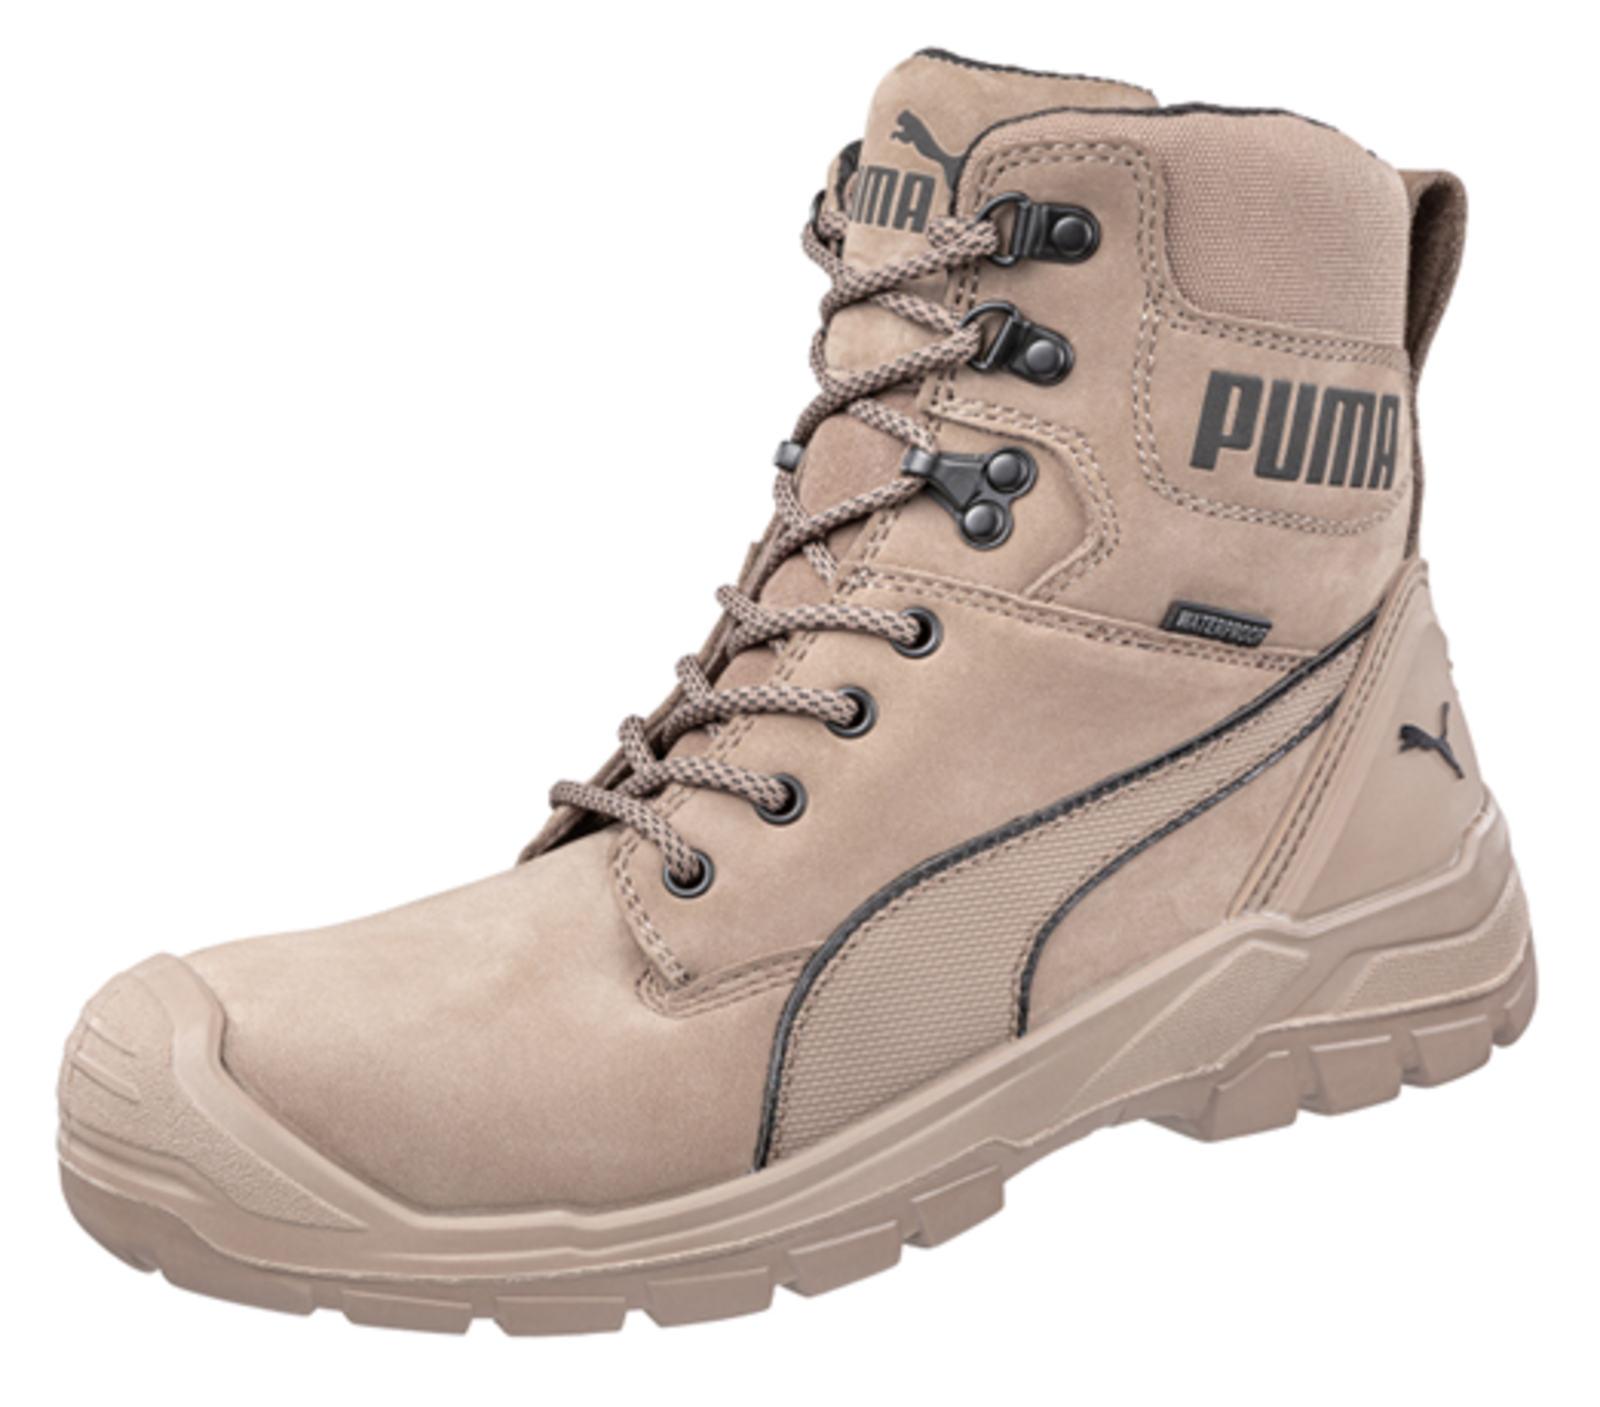 Bezpečnostná obuv Puma Conquest Stone S3 - veľkosť: 46, farba: svetlohnedá